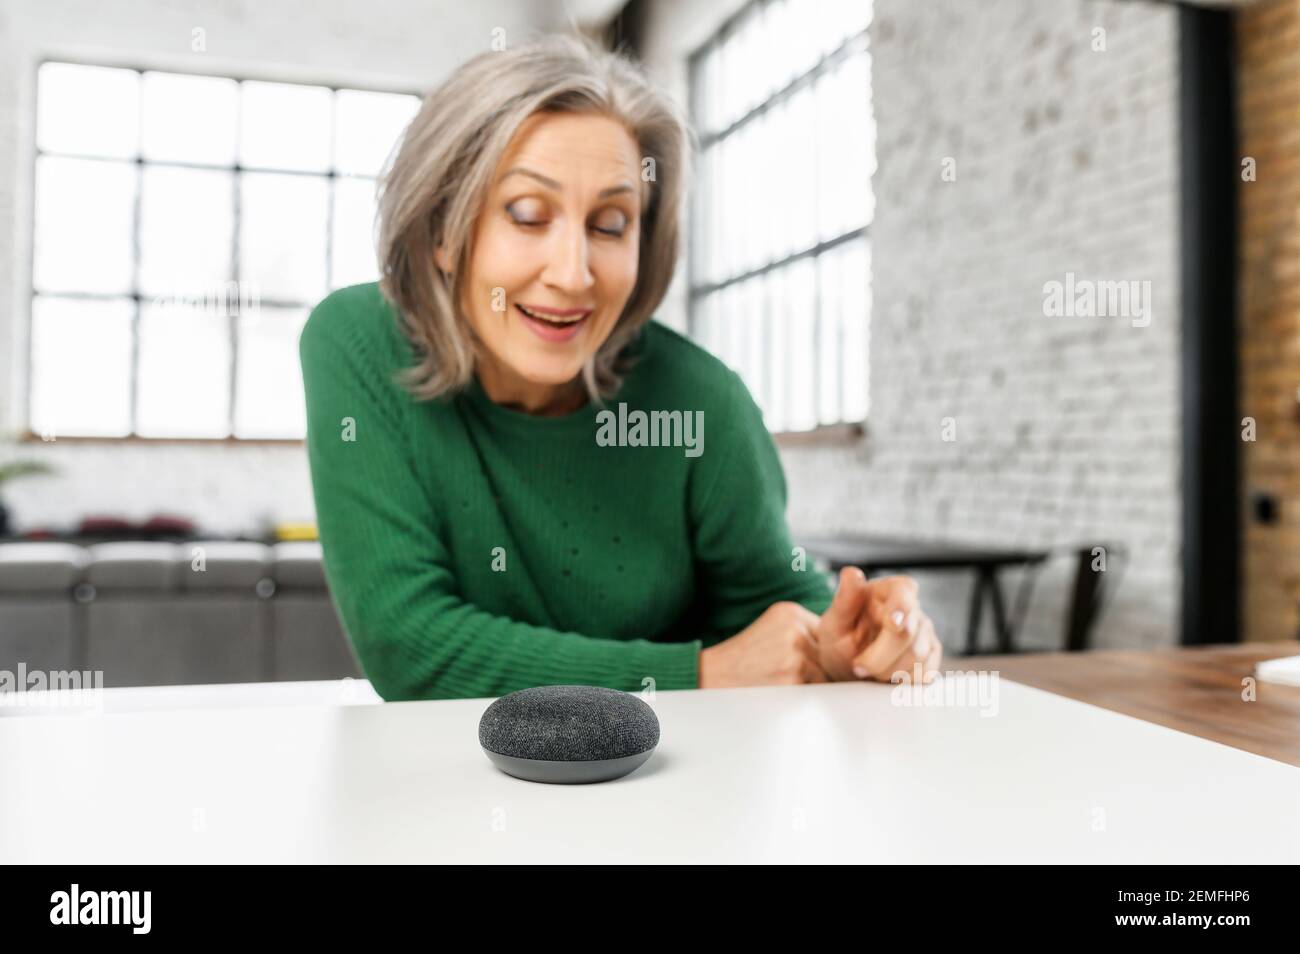 Ältere ältere moderne Frau verwendet Sprachbefehle für drahtlose intelligente Lautsprechersteuerung. Smart Home und Technologiekonzept Stockfoto